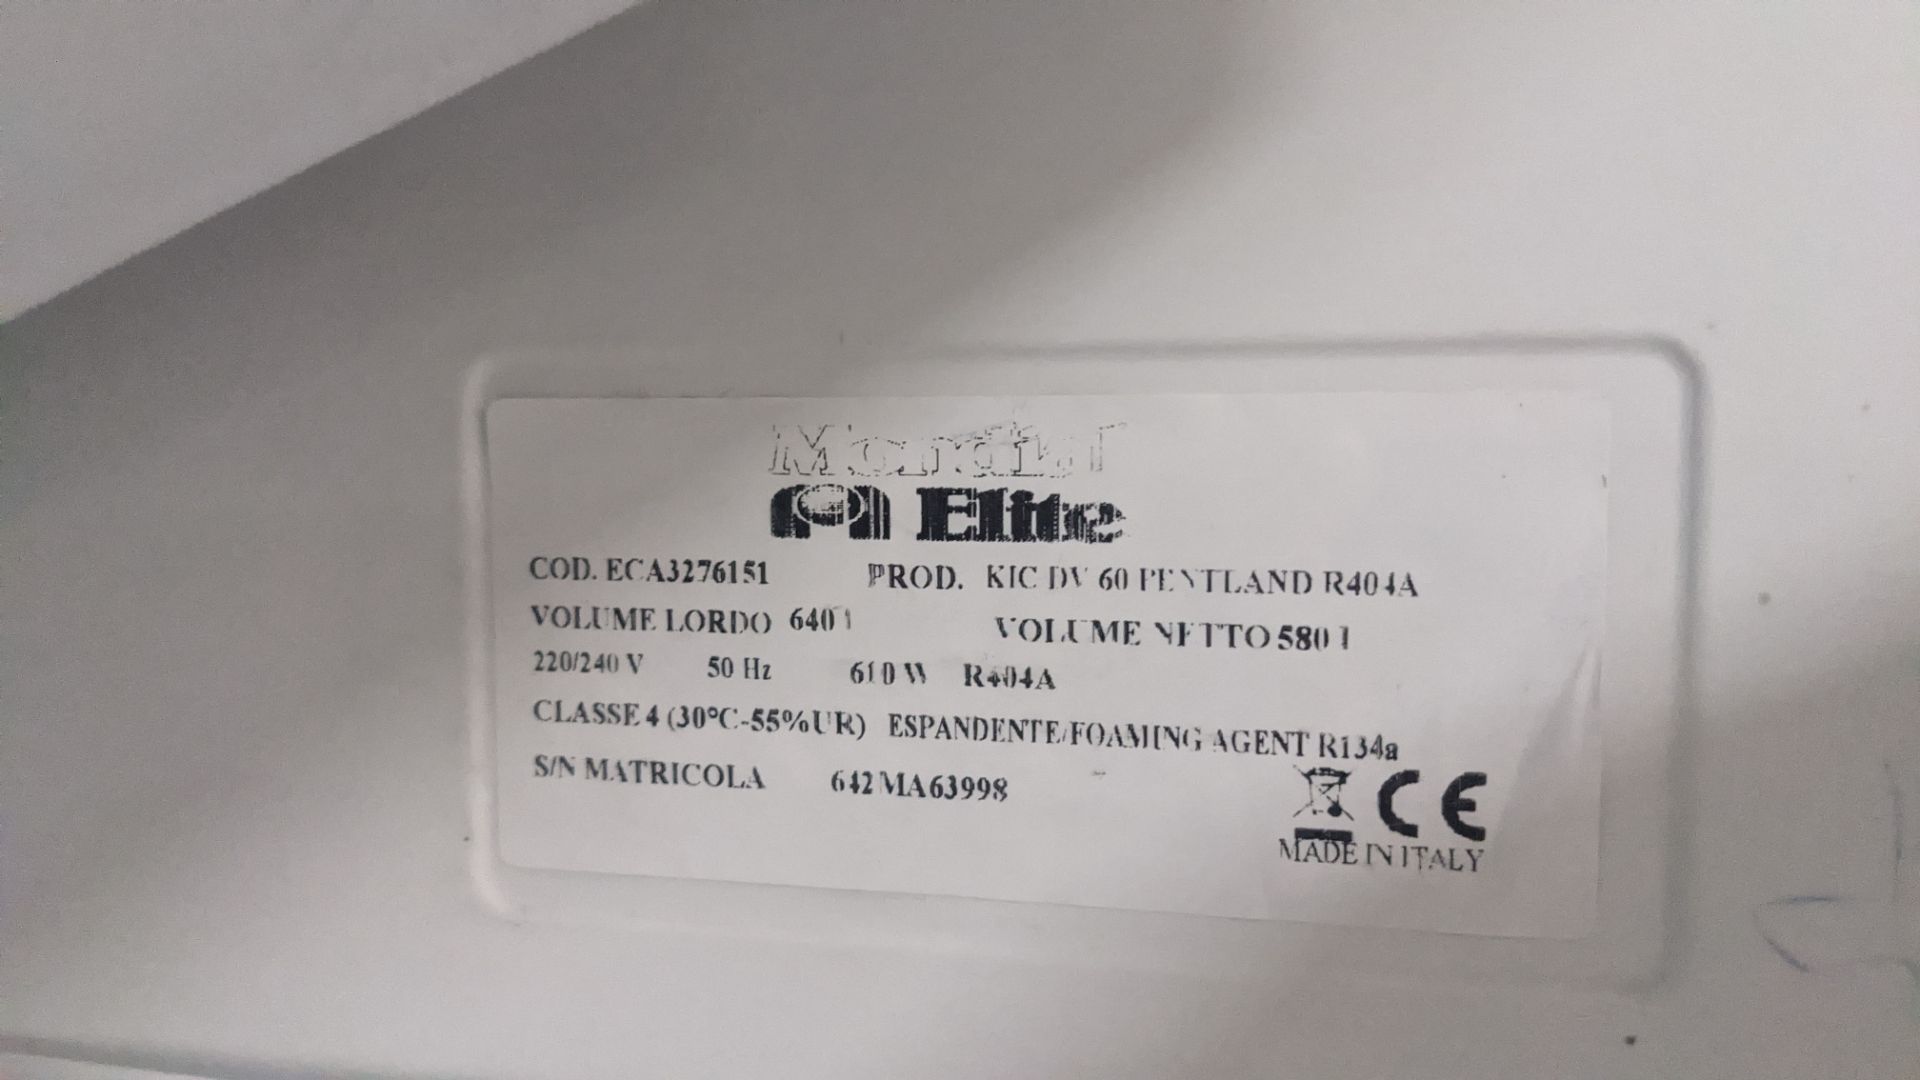 Mondial Elite KICDV60 tall wide white freezer - Image 5 of 5